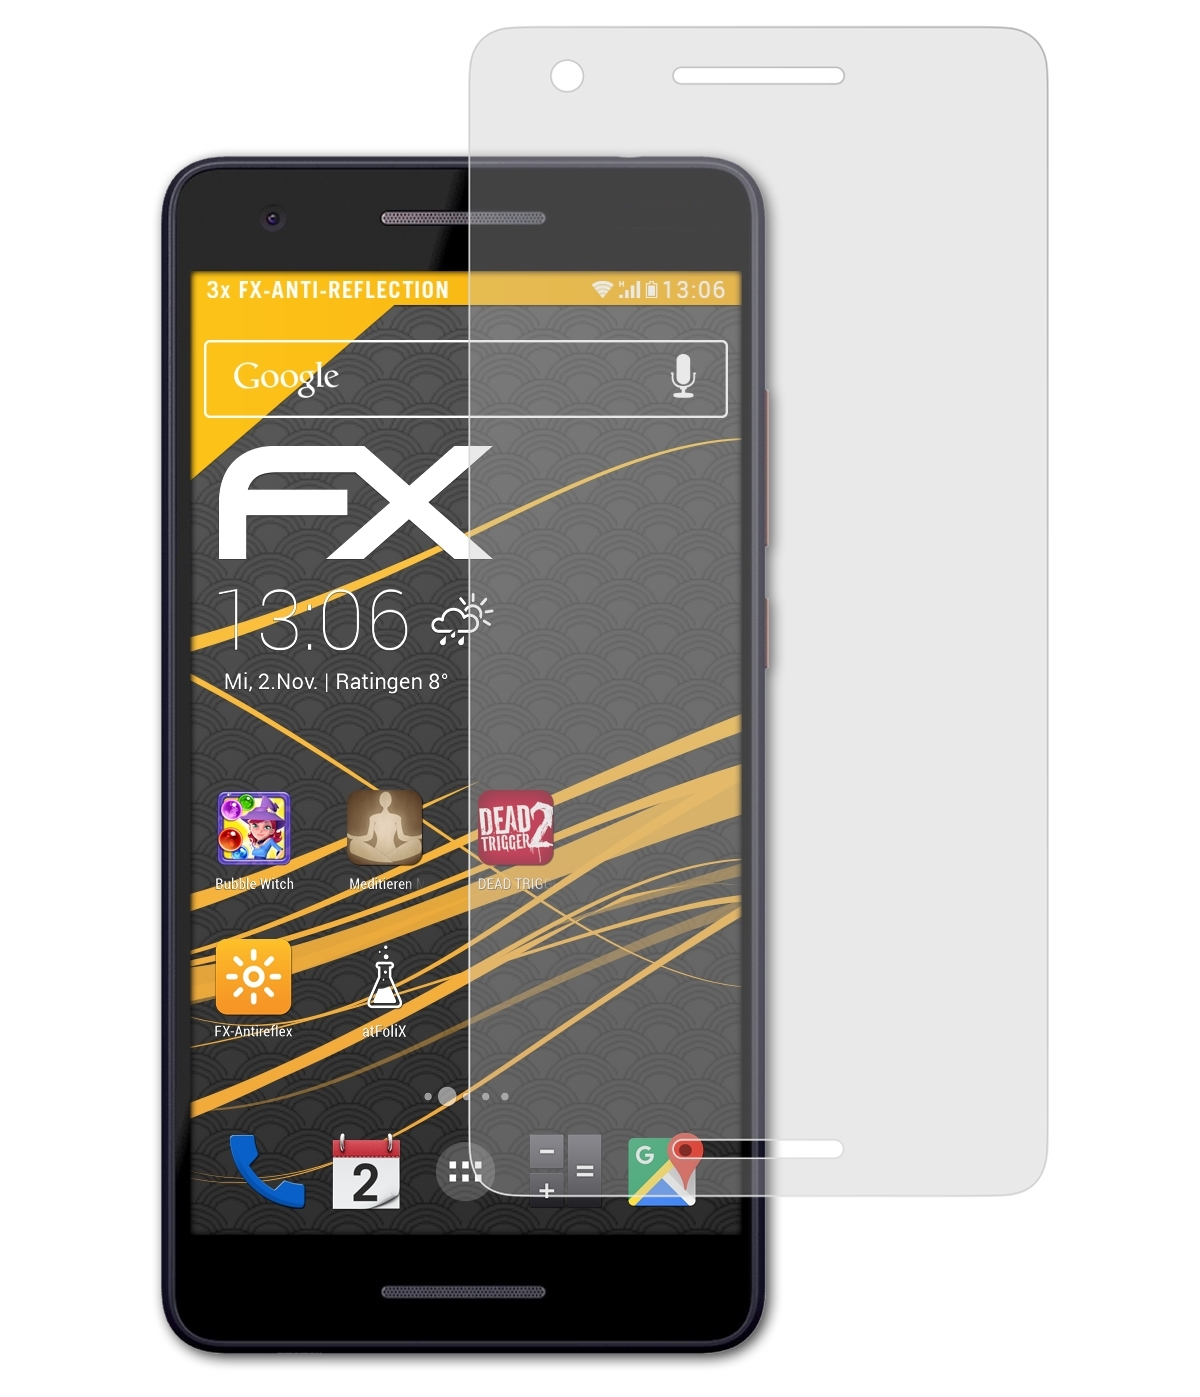 Displayschutz(für 3x 2.1) Nokia ATFOLIX FX-Antireflex